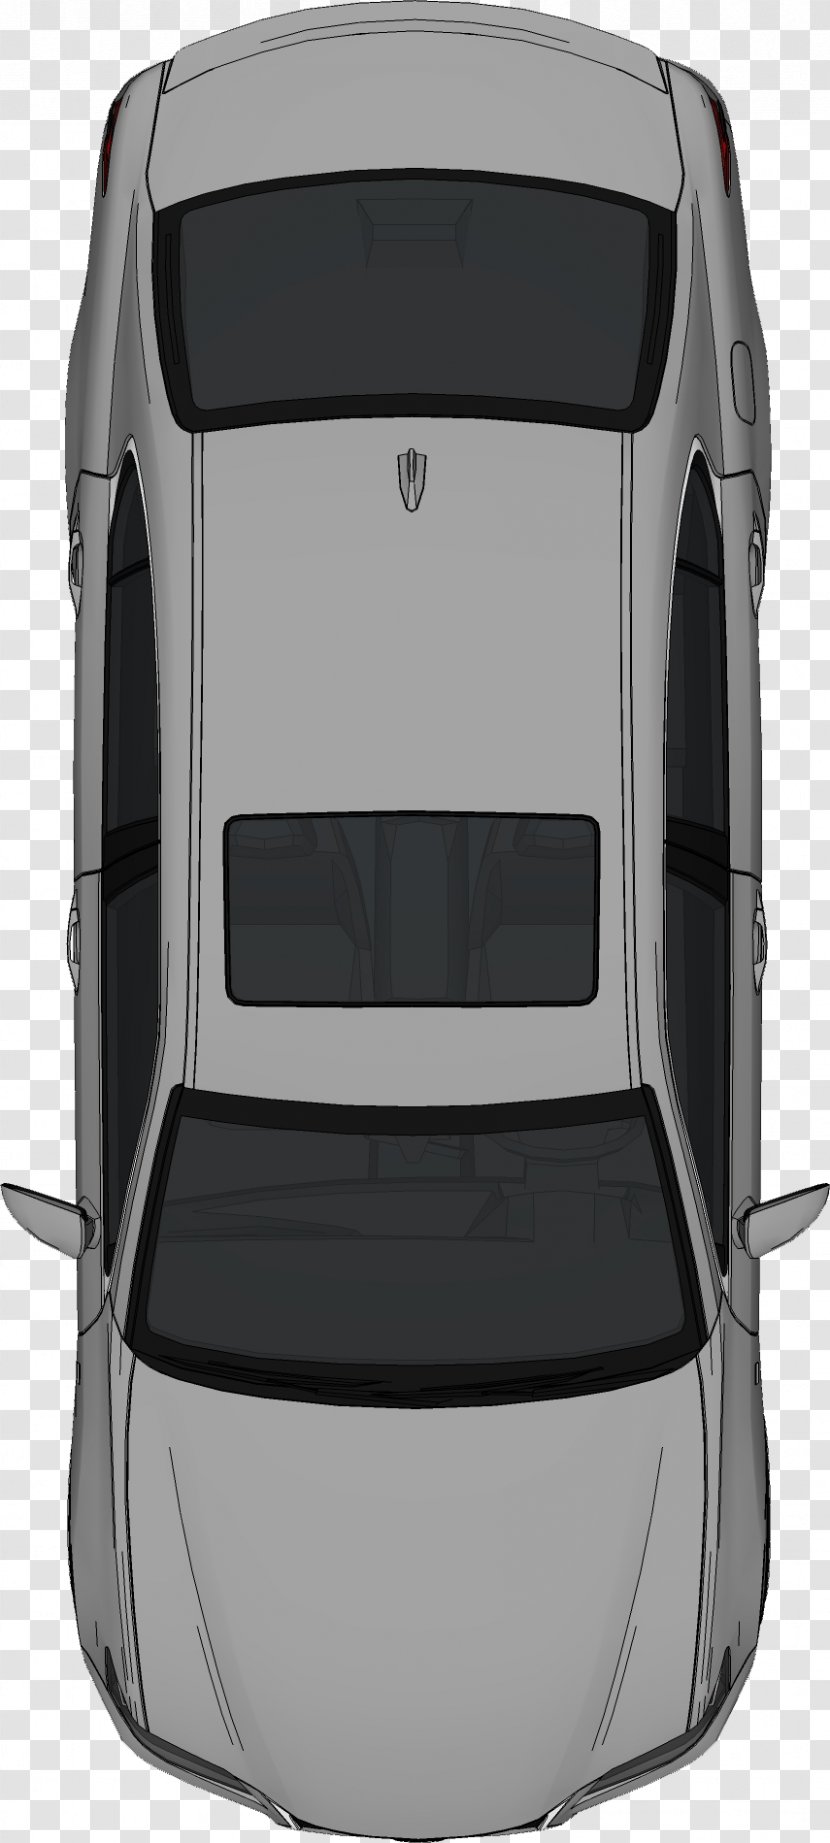 Car Clip Art - Black - Bed Top View Transparent PNG